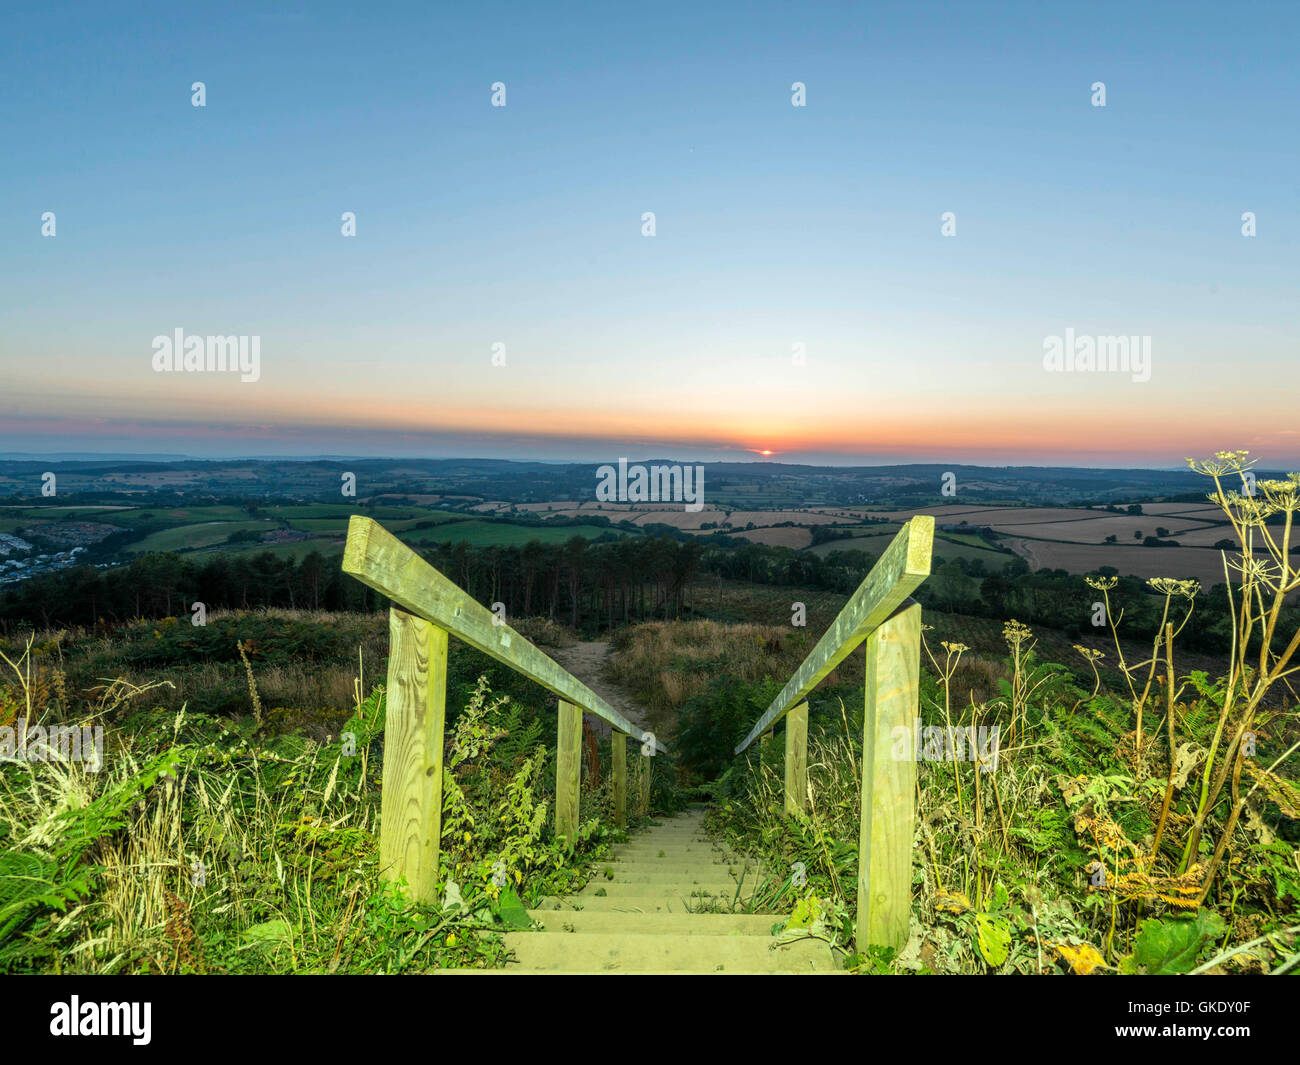 Paisaje representando la puesta del sol sobre la campiña de Devon. Imagen tomada en punto alto escalera de madera plataforma de visualización, Ladram Bay Foto de stock